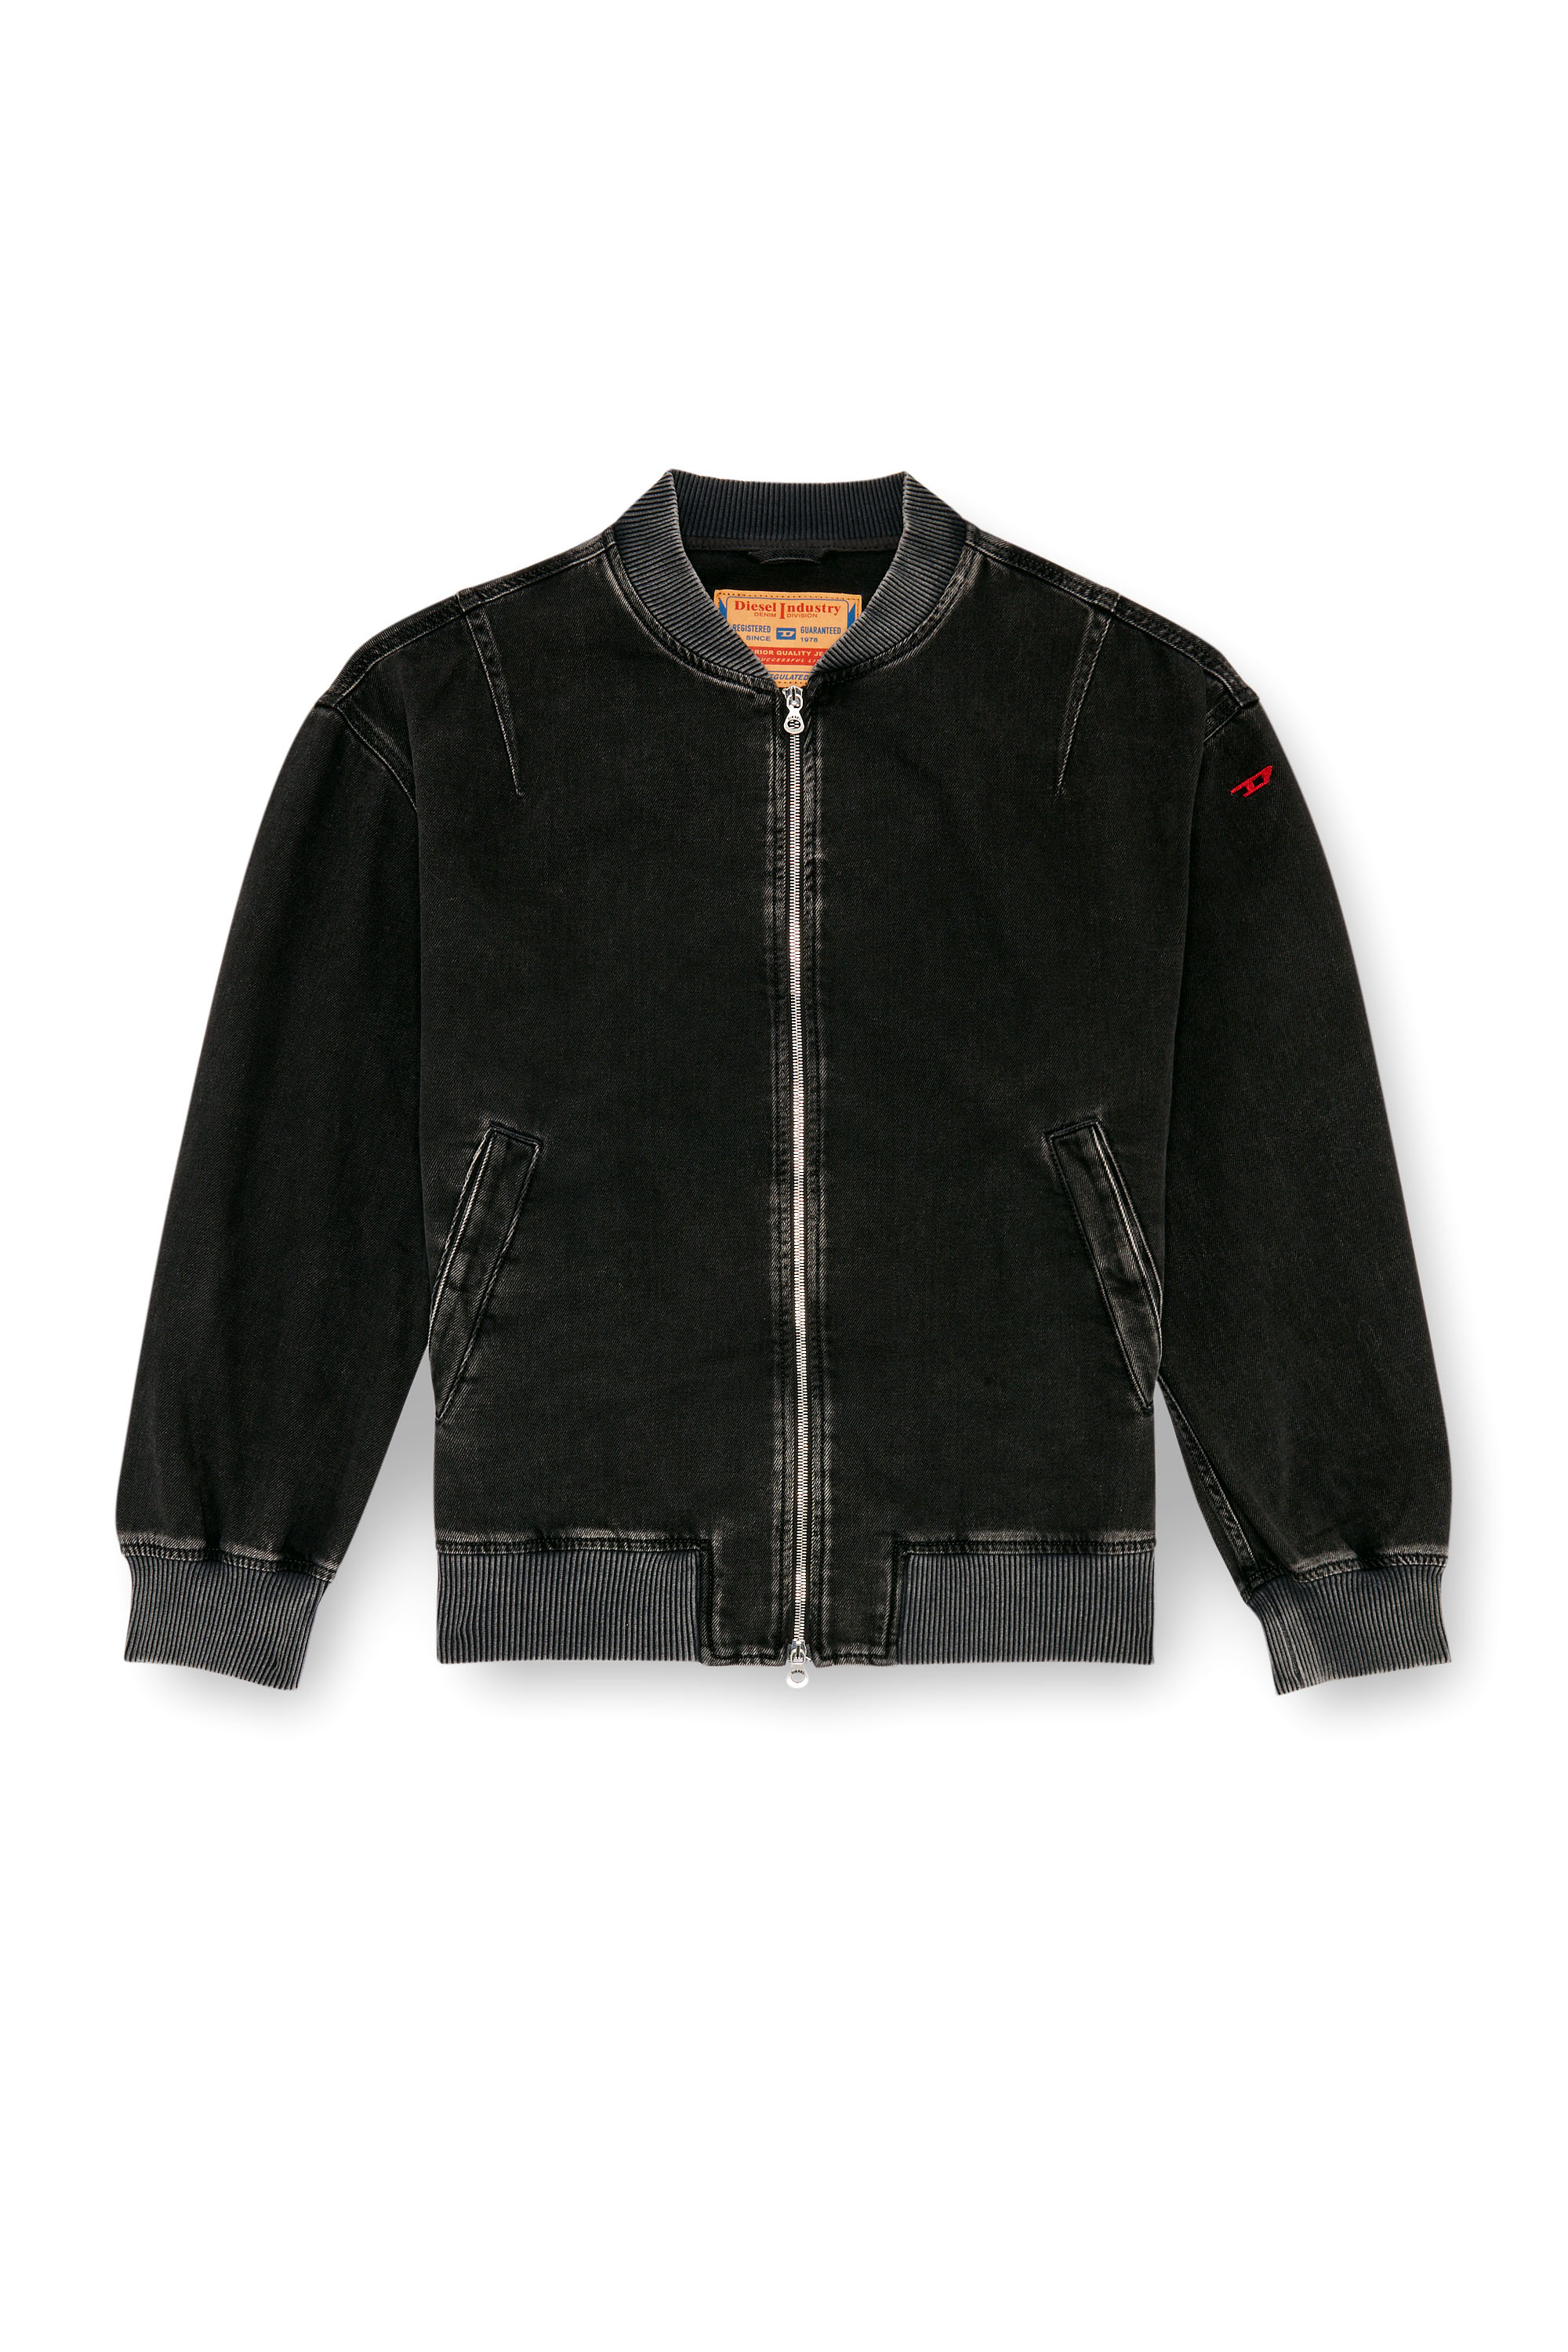 Diesel - D-VINZ, Man Bomber jacket in clean-wash denim in Black - Image 3